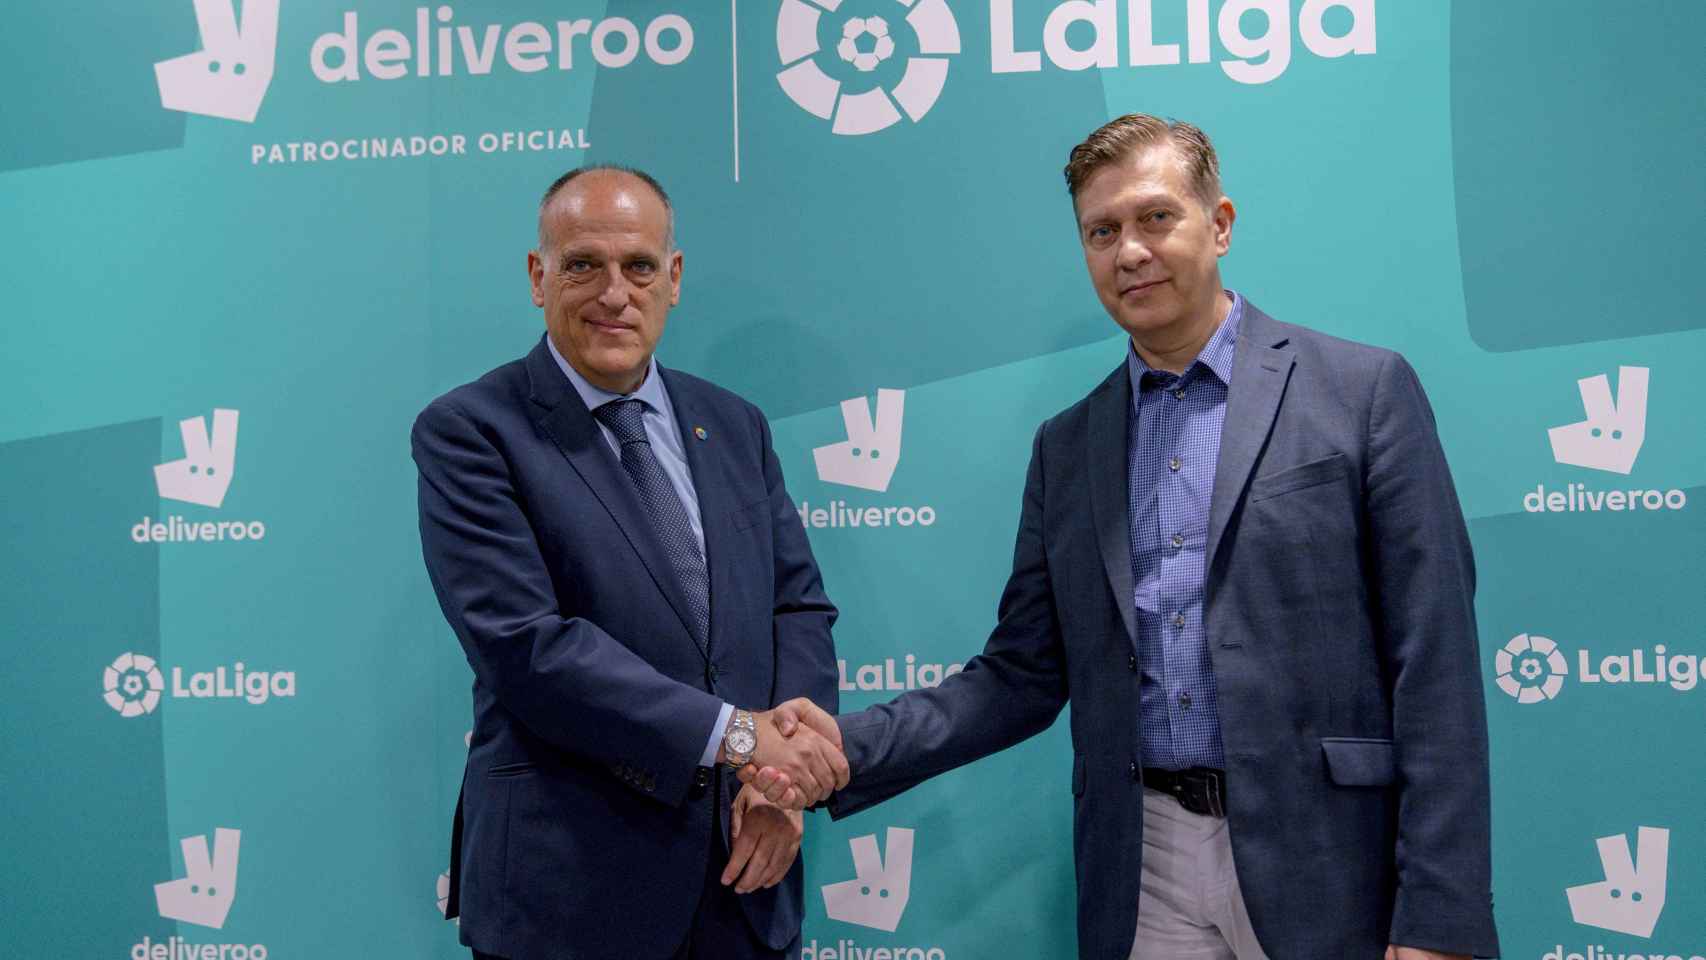 Gustavo García Brusilovsky, director general de Deliveroo España, y Javier Tebas, presidente de LaLiga.